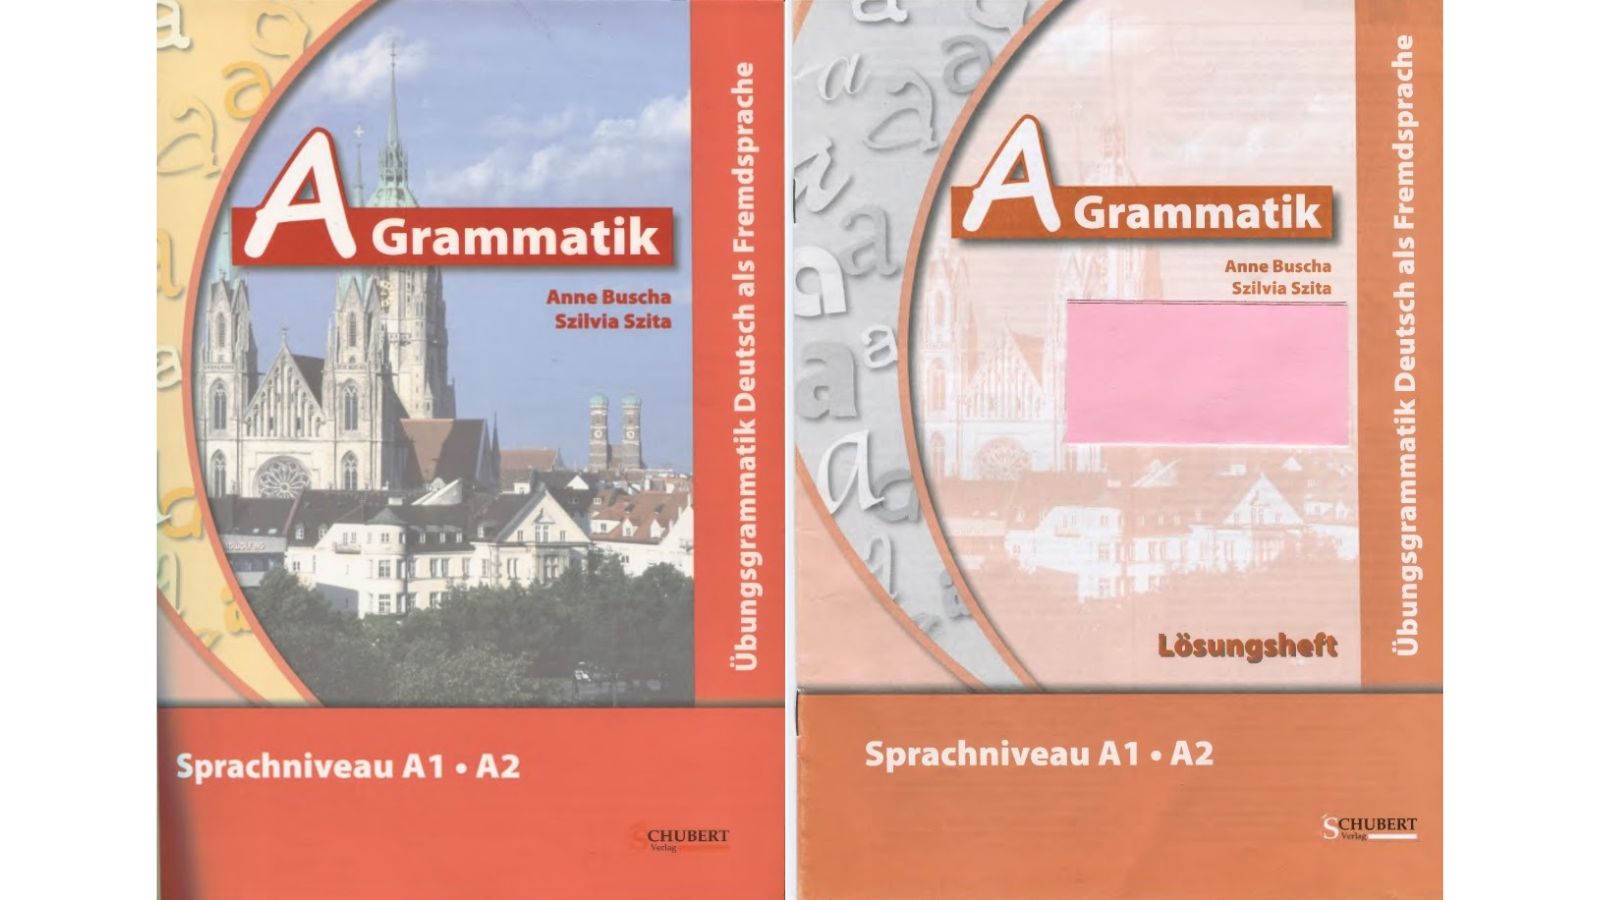 Giáo trình tiếng Đức A Grammatik